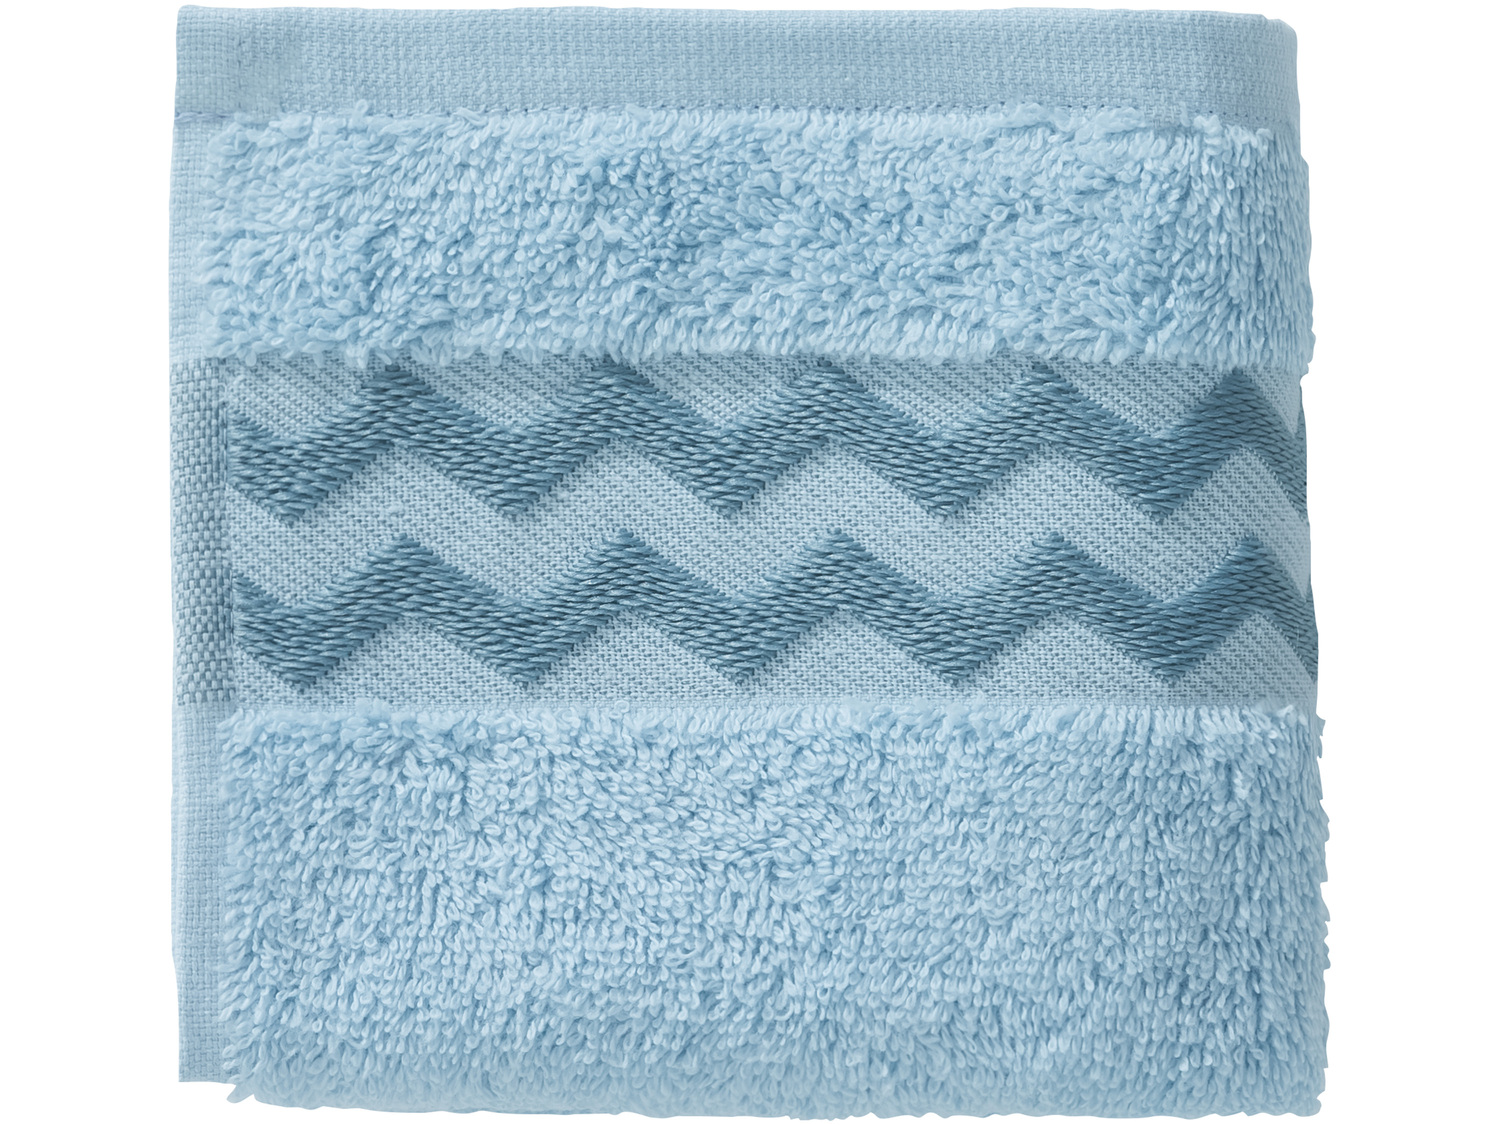 Ręczniki 30 x 50 cm, 4 szt.* Miomare, cena 3,99 PLN cena za sztukę
4 wzory 
- ...